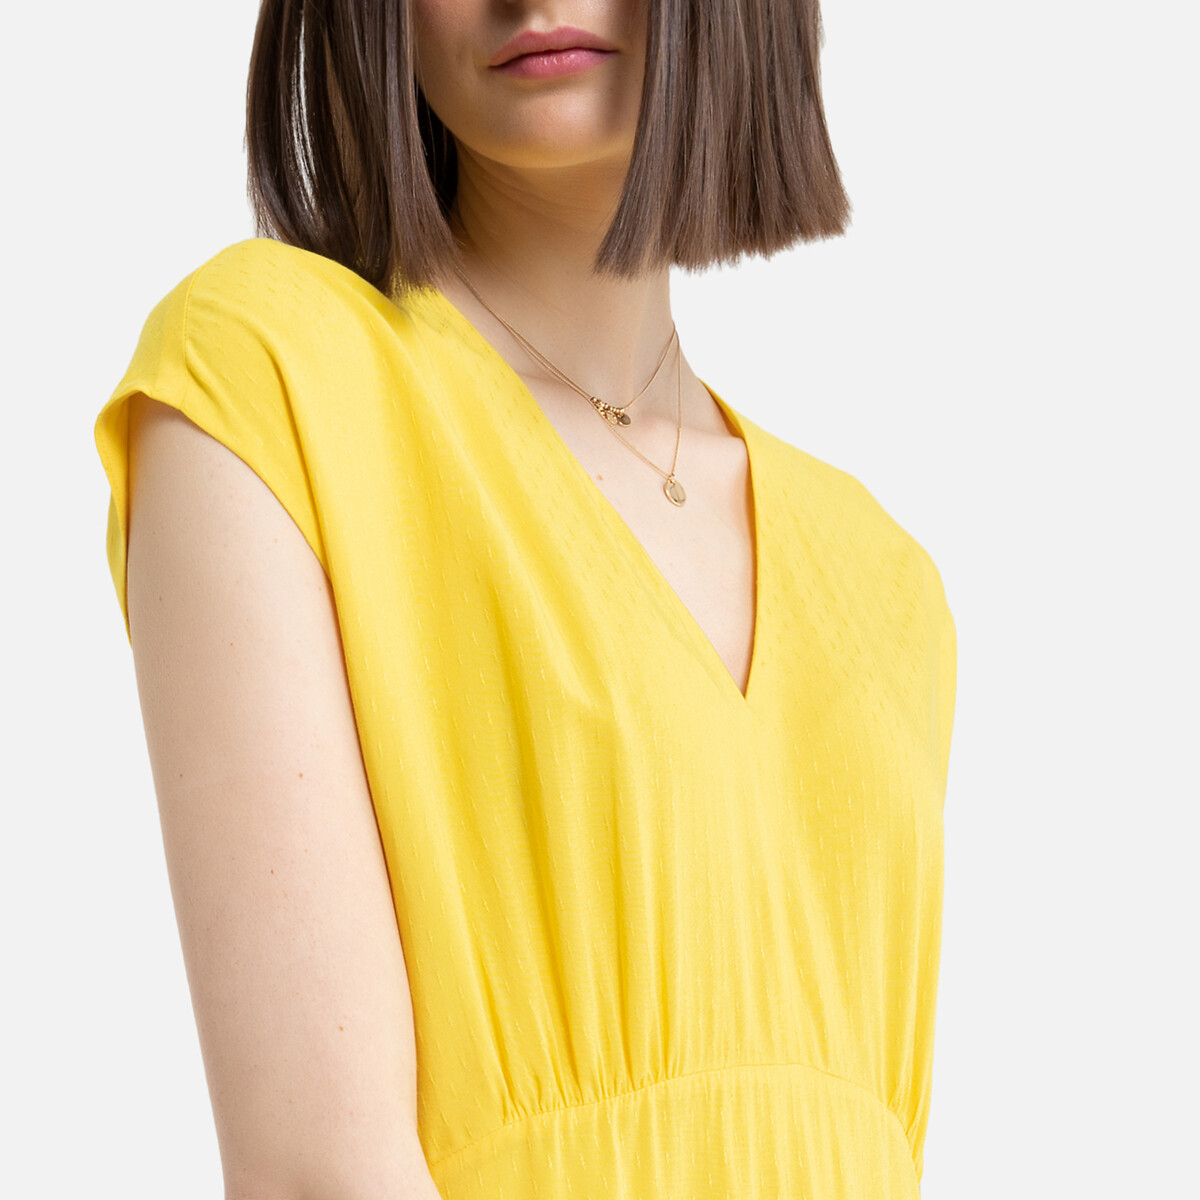 Платье La Redoute Длинное без рукавов 36 (FR) - 42 (RUS) желтый, размер 36 (FR) - 42 (RUS) Длинное без рукавов 36 (FR) - 42 (RUS) желтый - фото 2